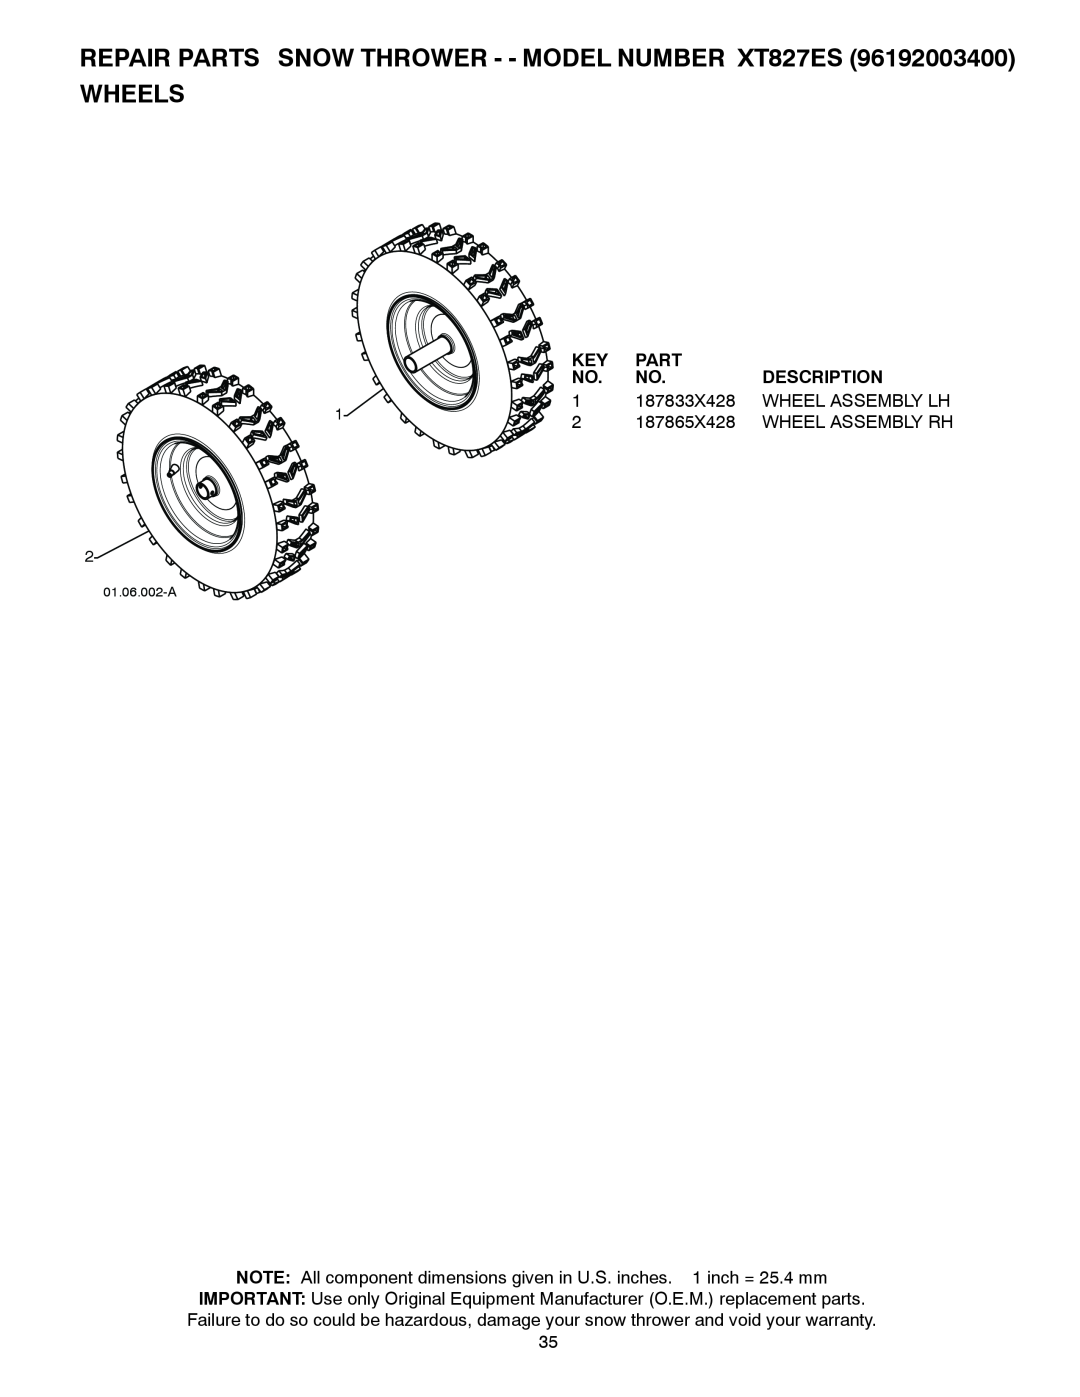 Poulan XT827ES, 428863, 96192003400 owner manual Wheels, Part, Description, 187833X428, Wheel Assembly Lh, 187865X428 